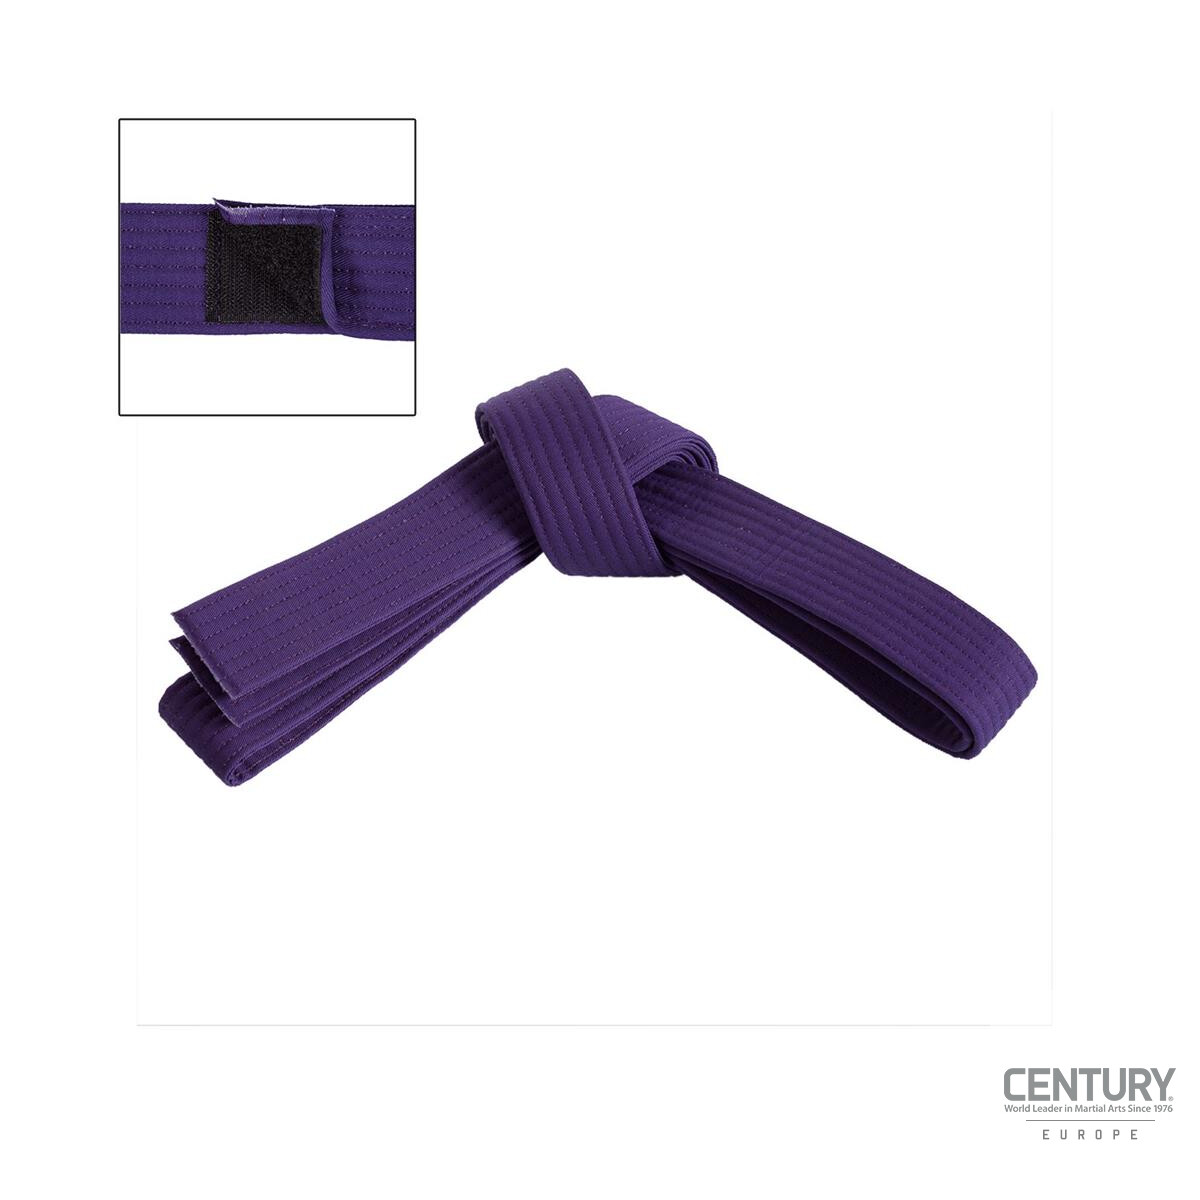 Adjustable solid one color Belt Purple S